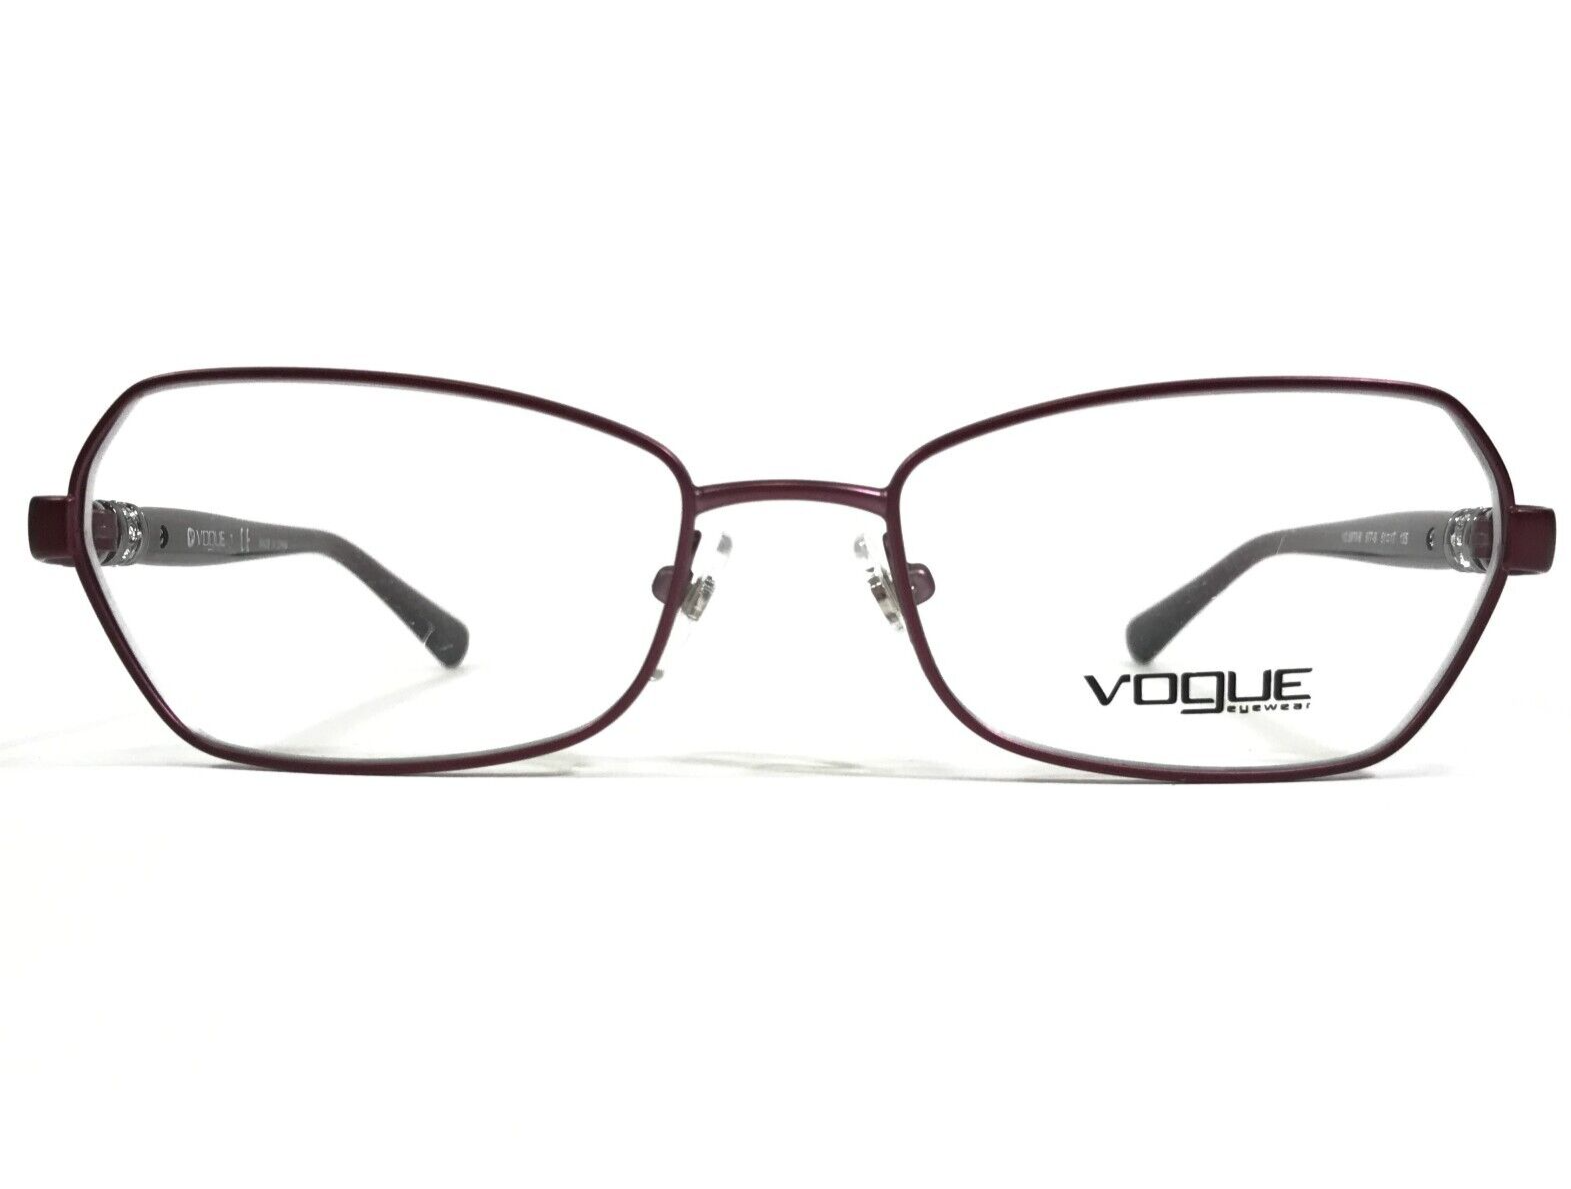 Primary image for Vogue Brille Rahmen VO 3970-B 977-S Violett Rot Cat Eye Draht Felge 51-17-135